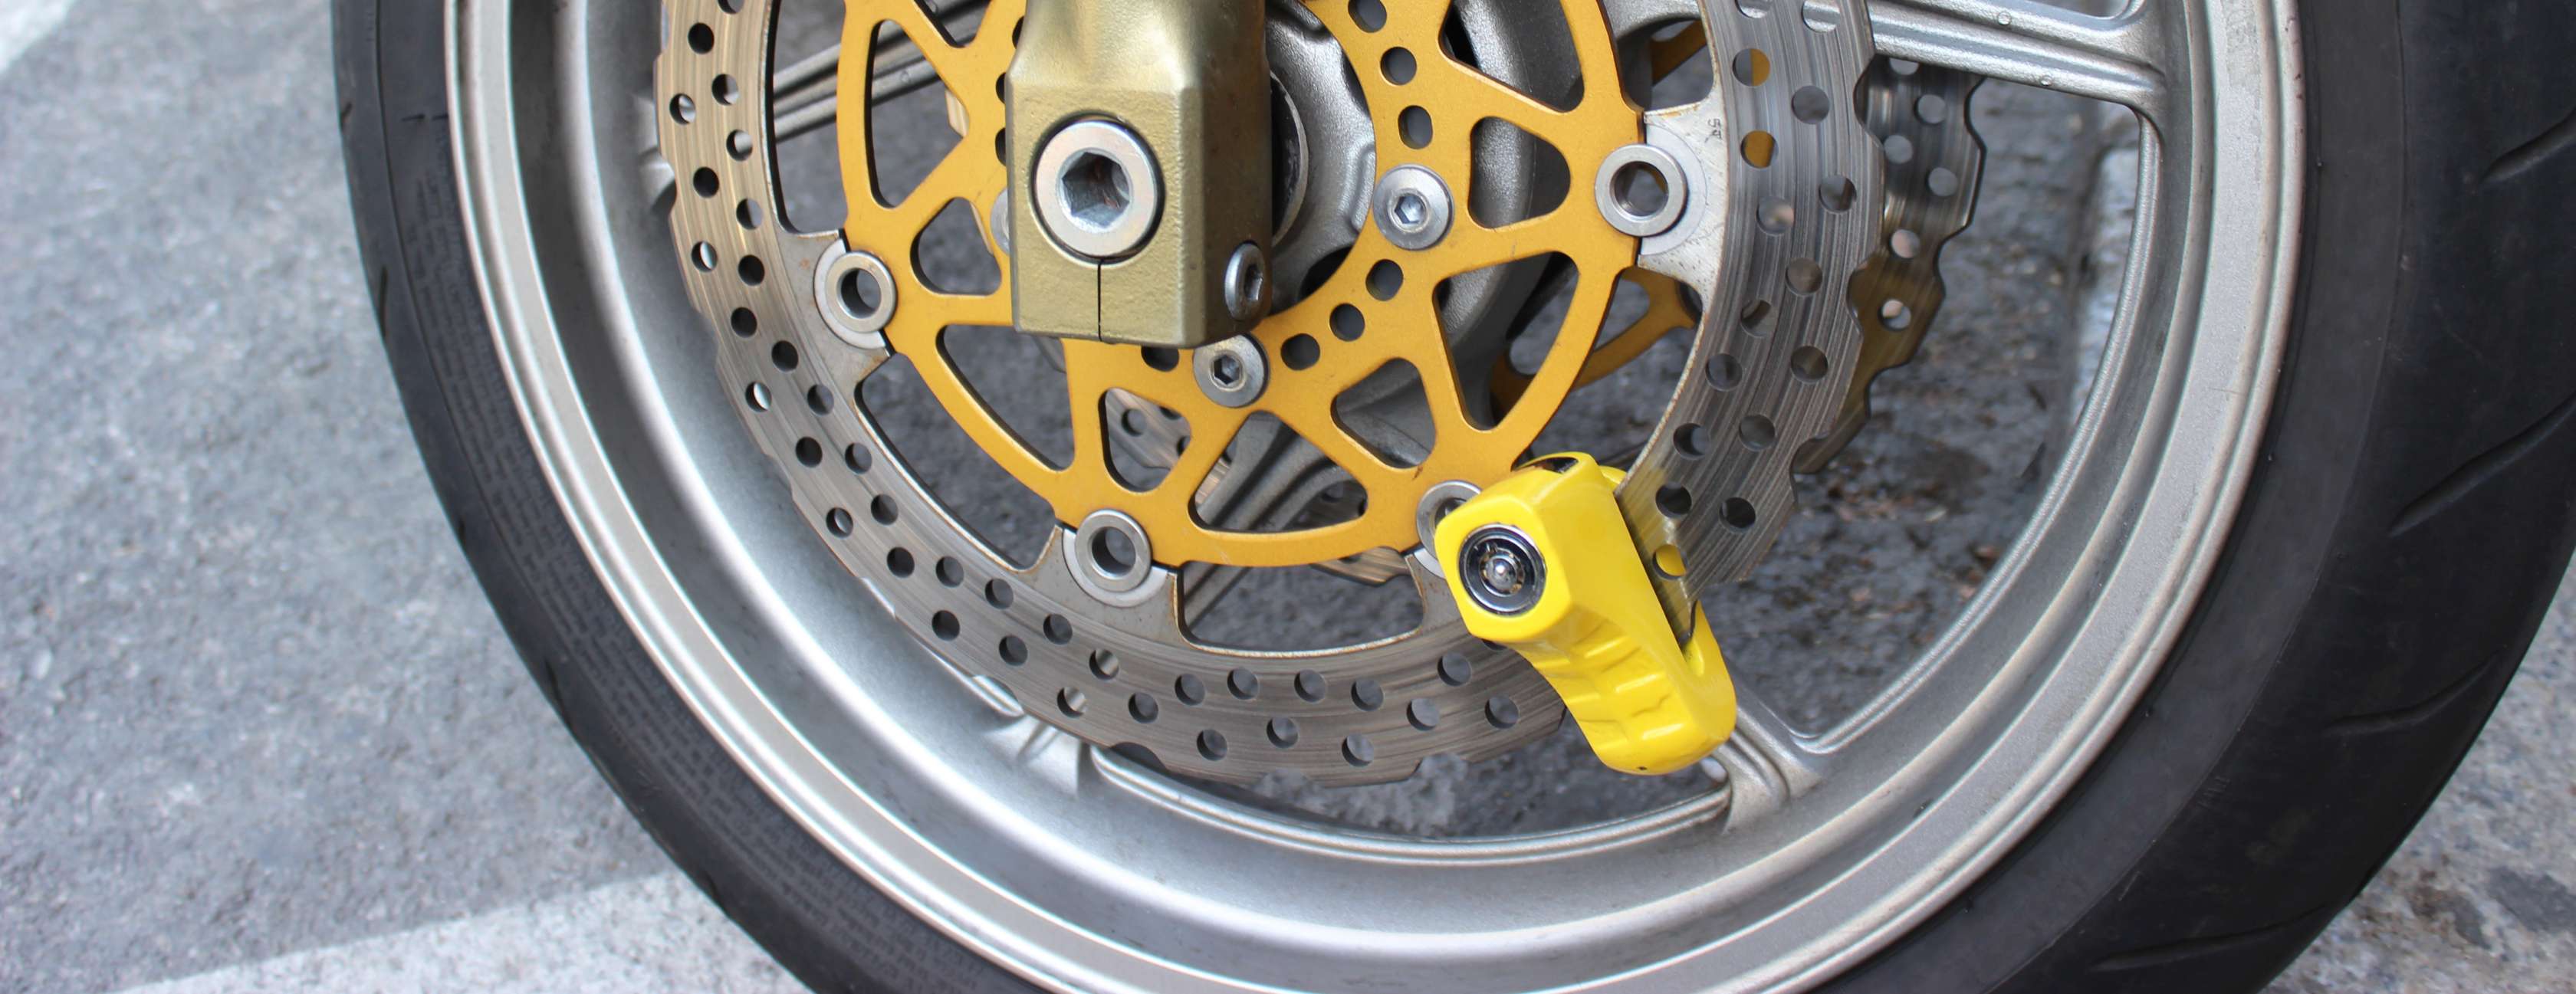 Allianz – Motorrad Diebstahlschutz: Motorradreifen mit einem gelben Bremsscheibenschloss